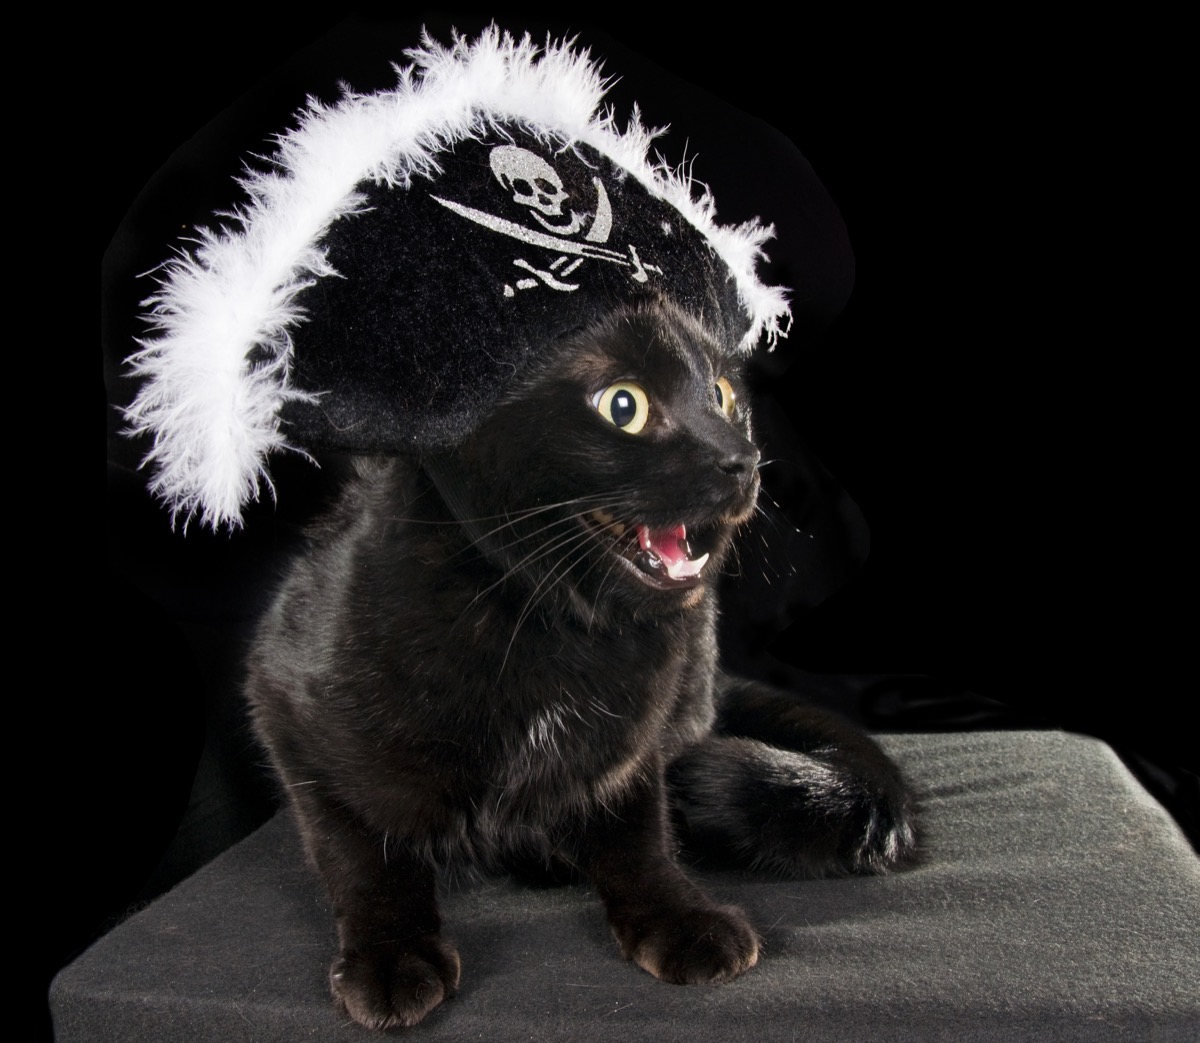 black cat wearing a pirate hat